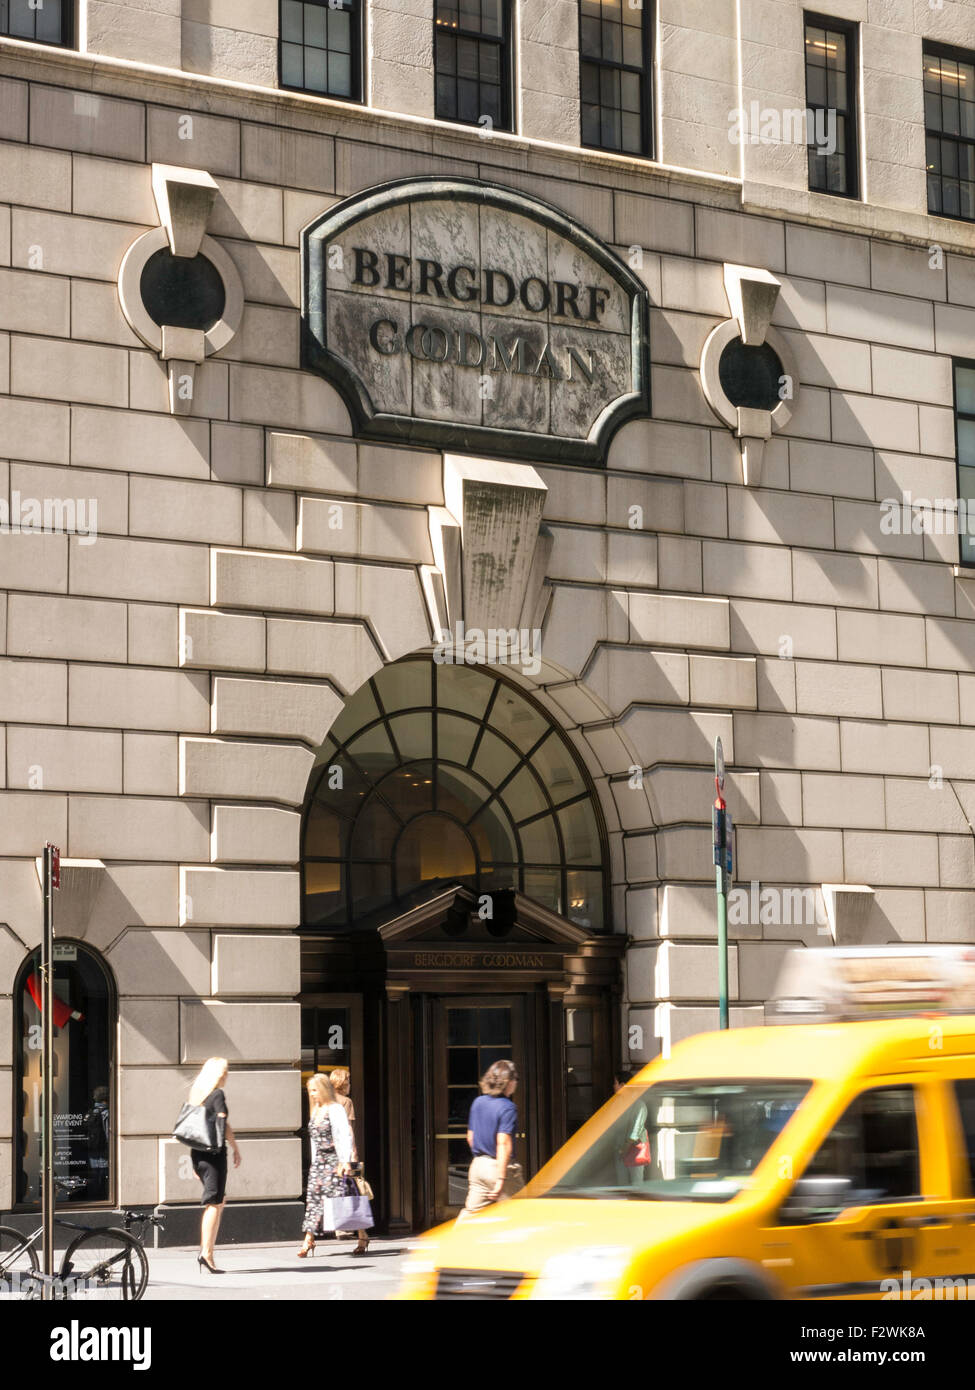 Bergdorf Goodman store in New York City Stock Photo - Alamy